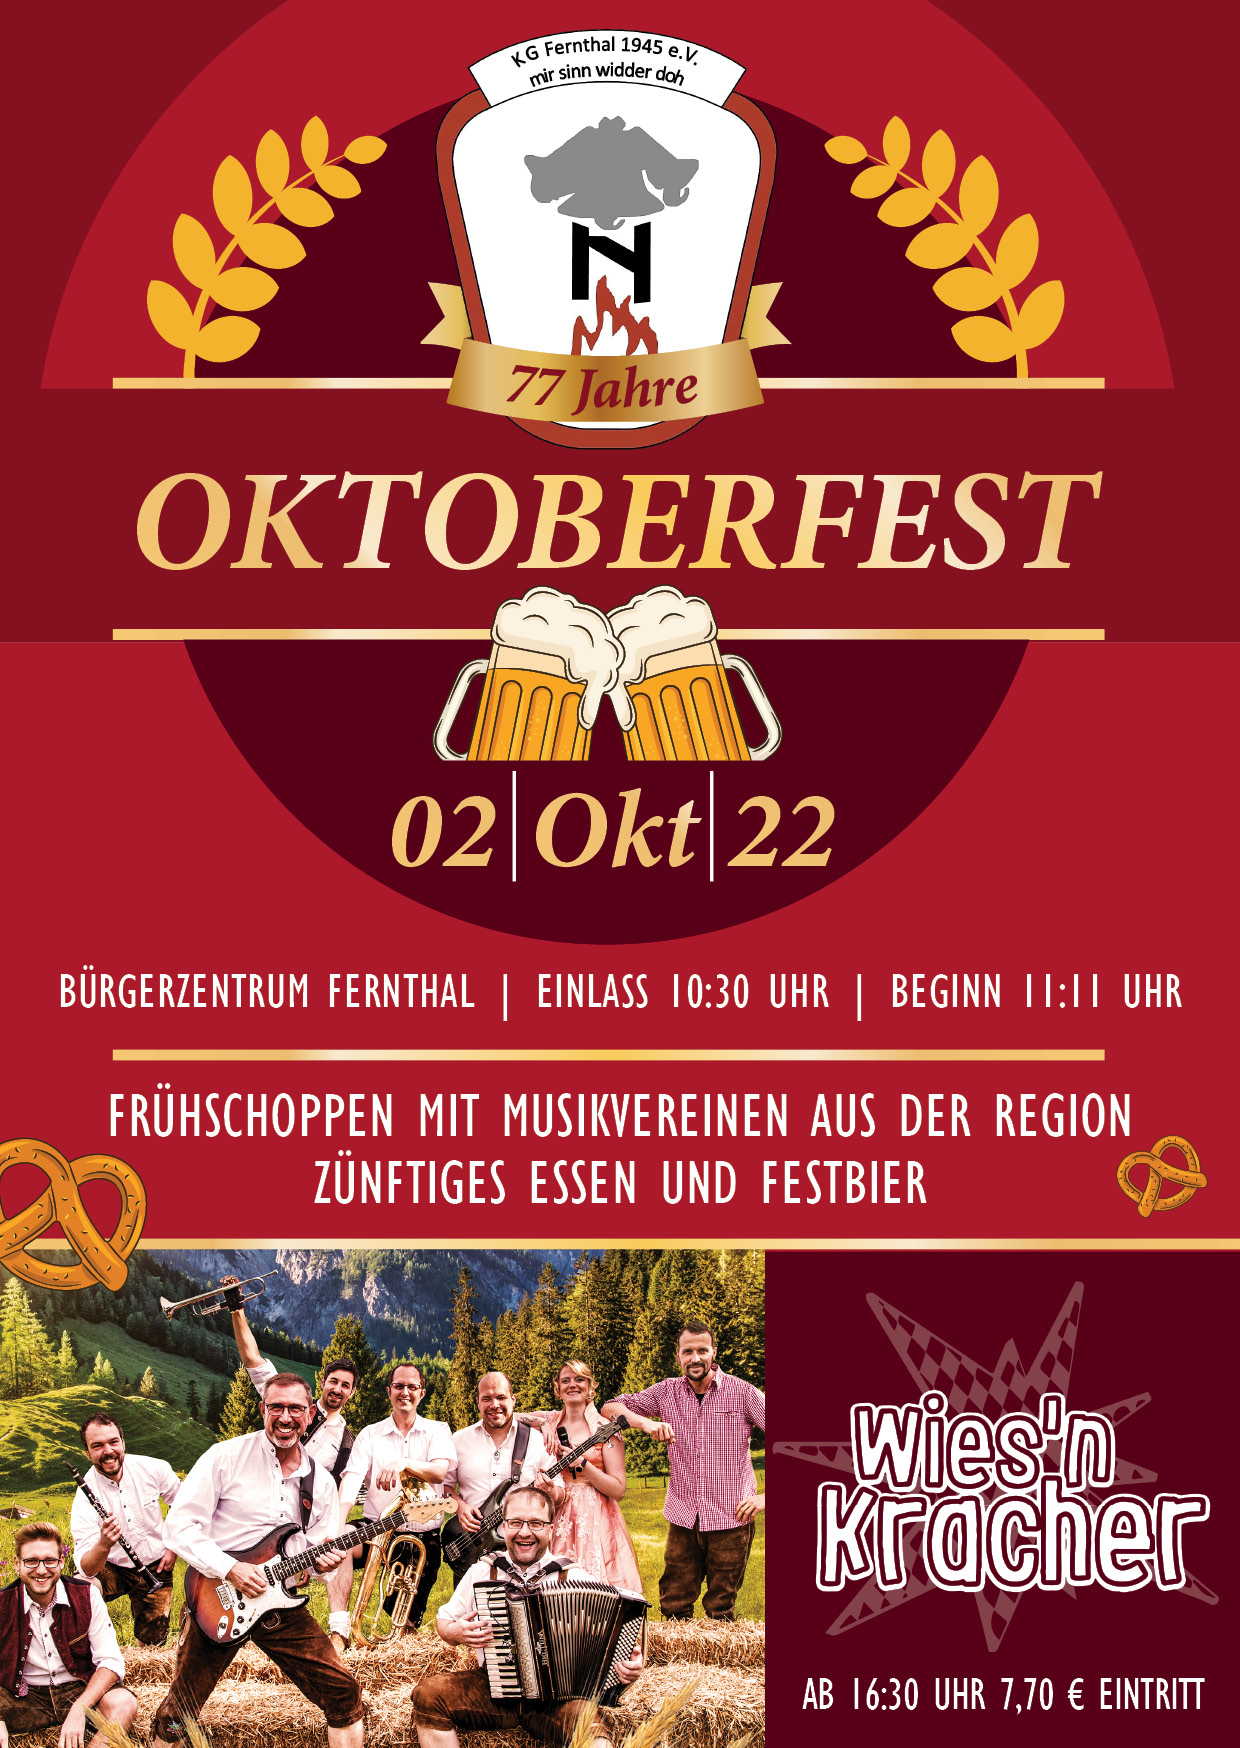 Großes Oktoberfest in Fernthal, anläßlich des 77.jährigen Bestehens unseres Vereins